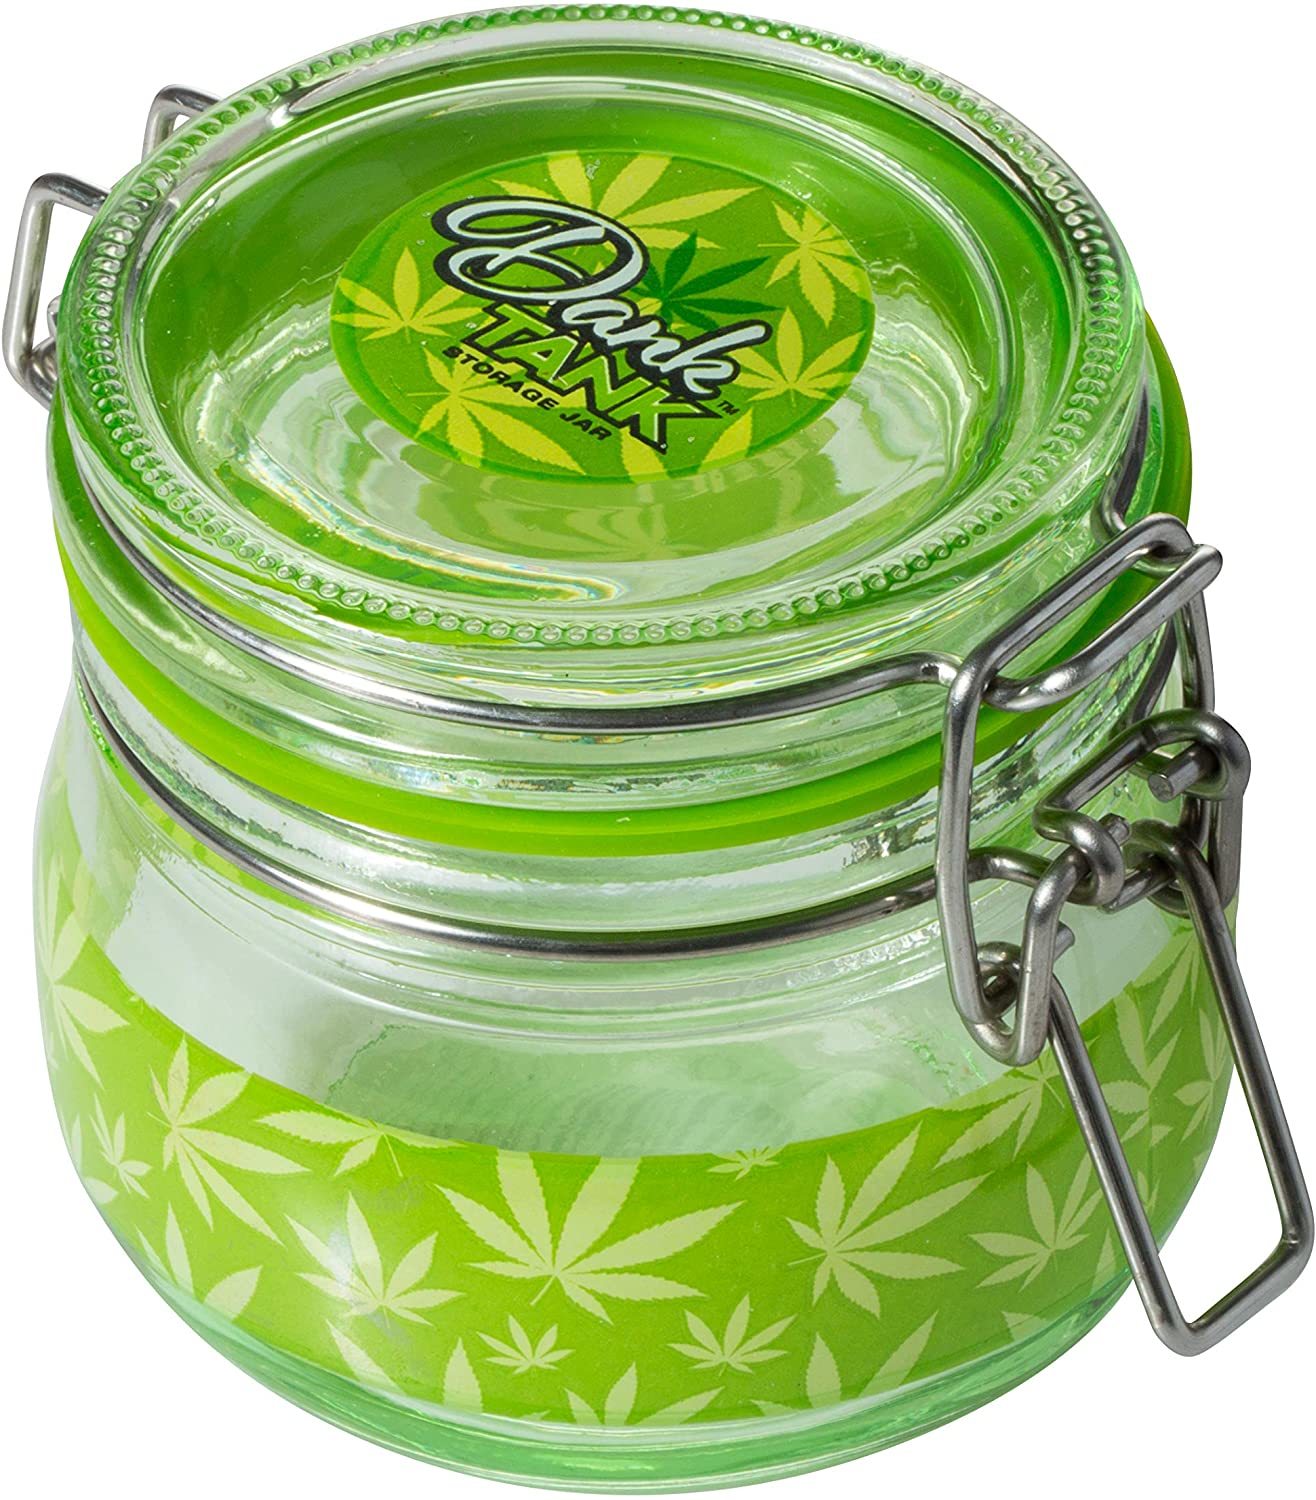 glass storage jar 